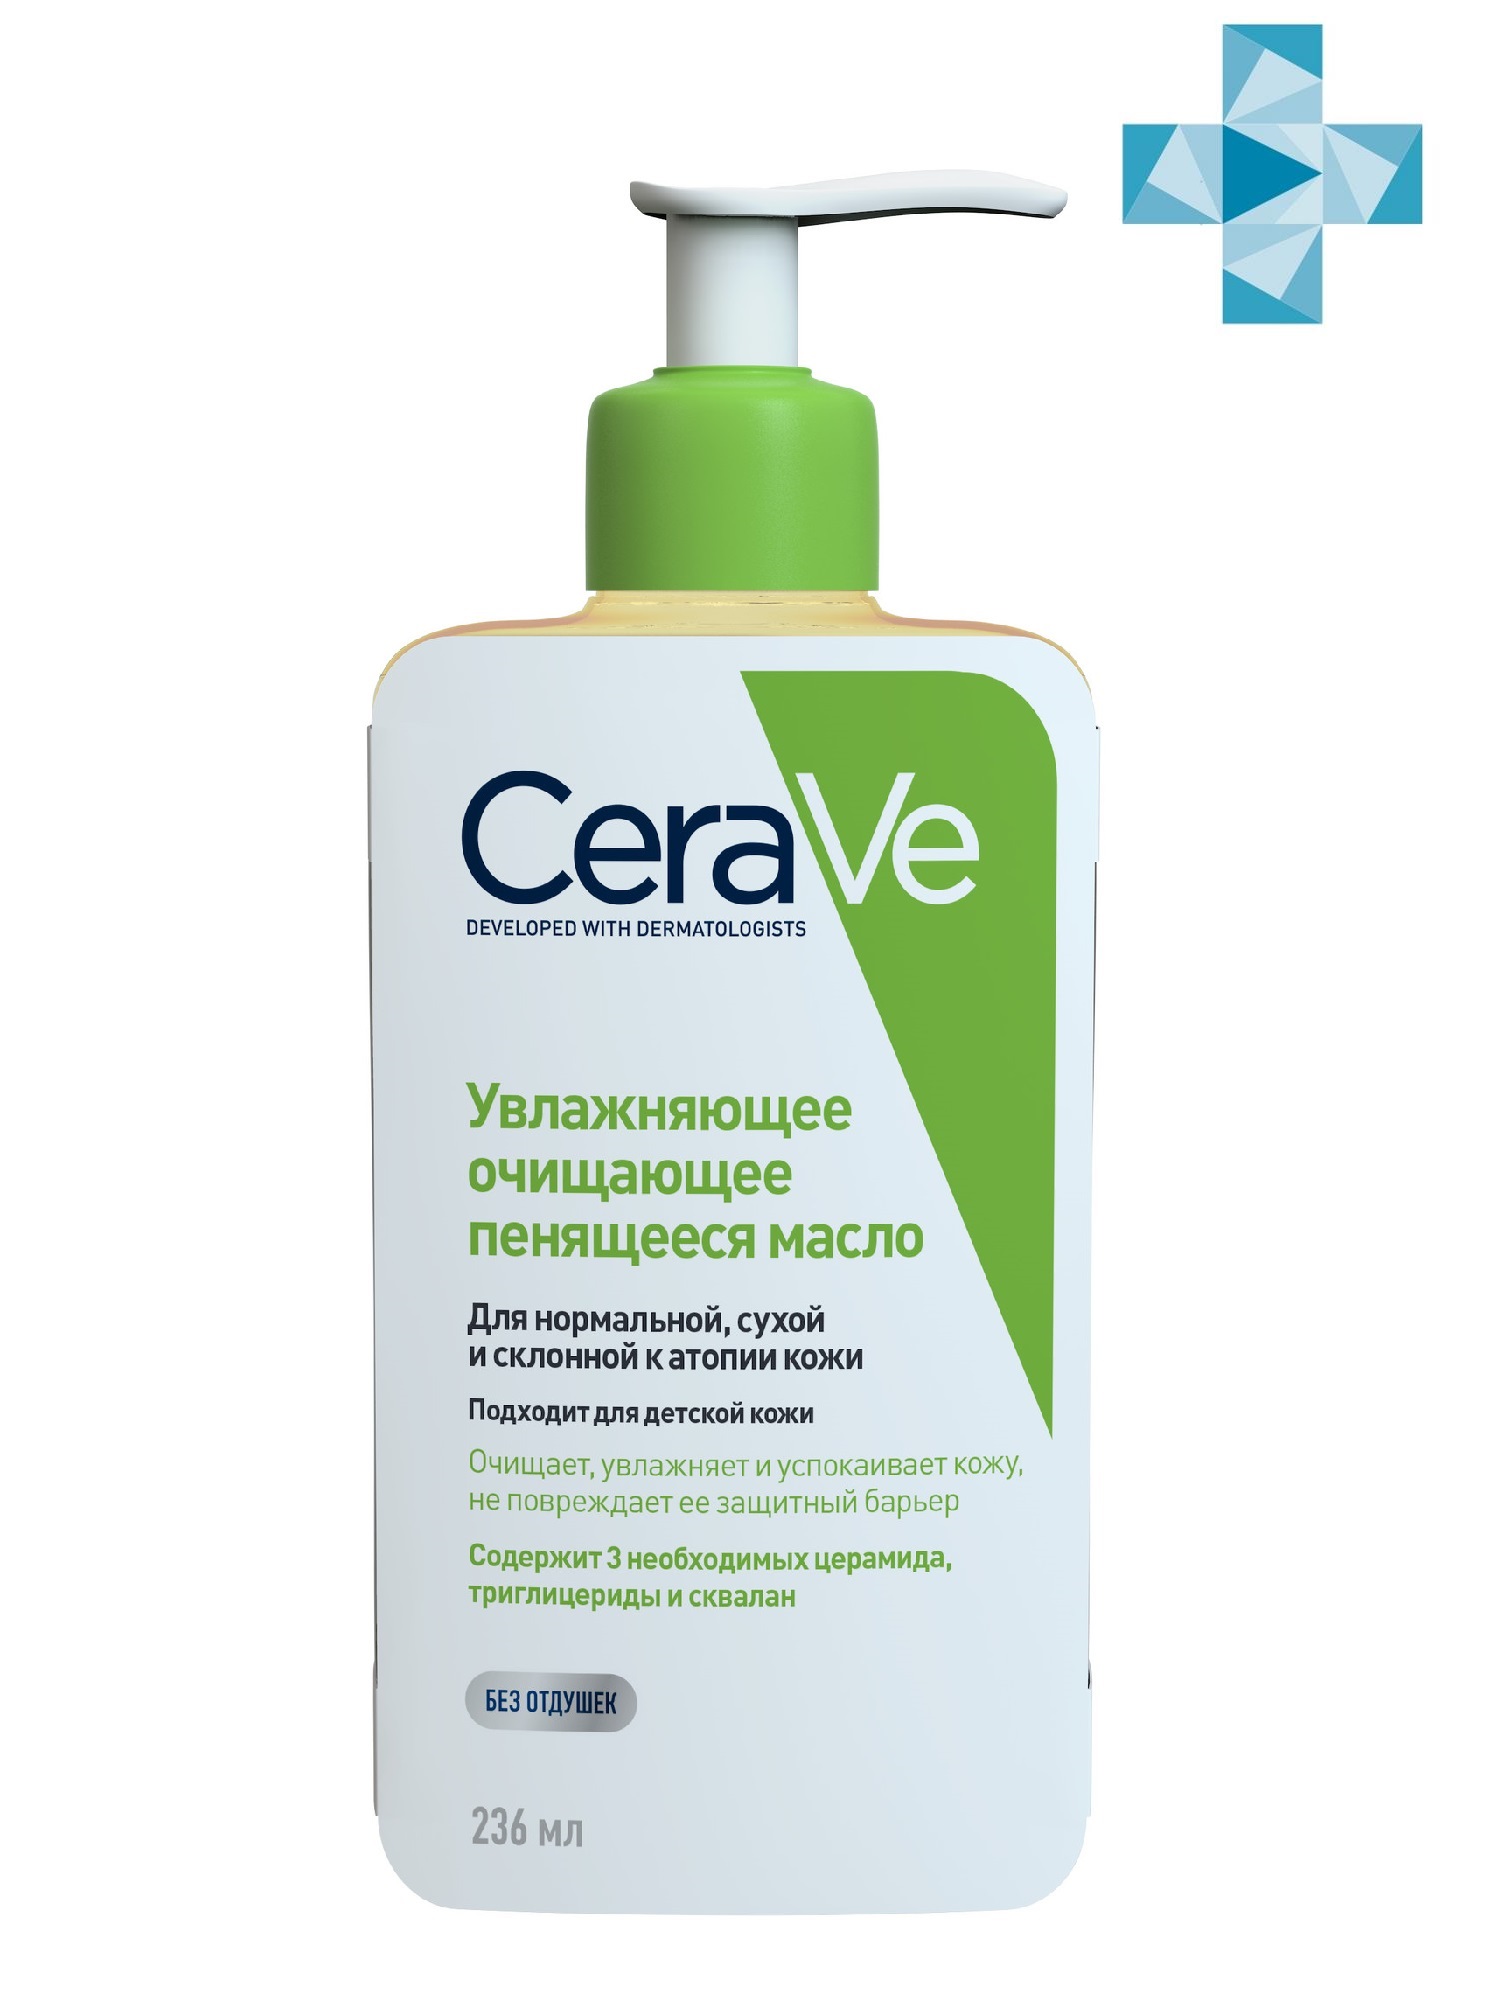 CeraVe Увлажняющее очищающее пенящееся масло для нормальной,